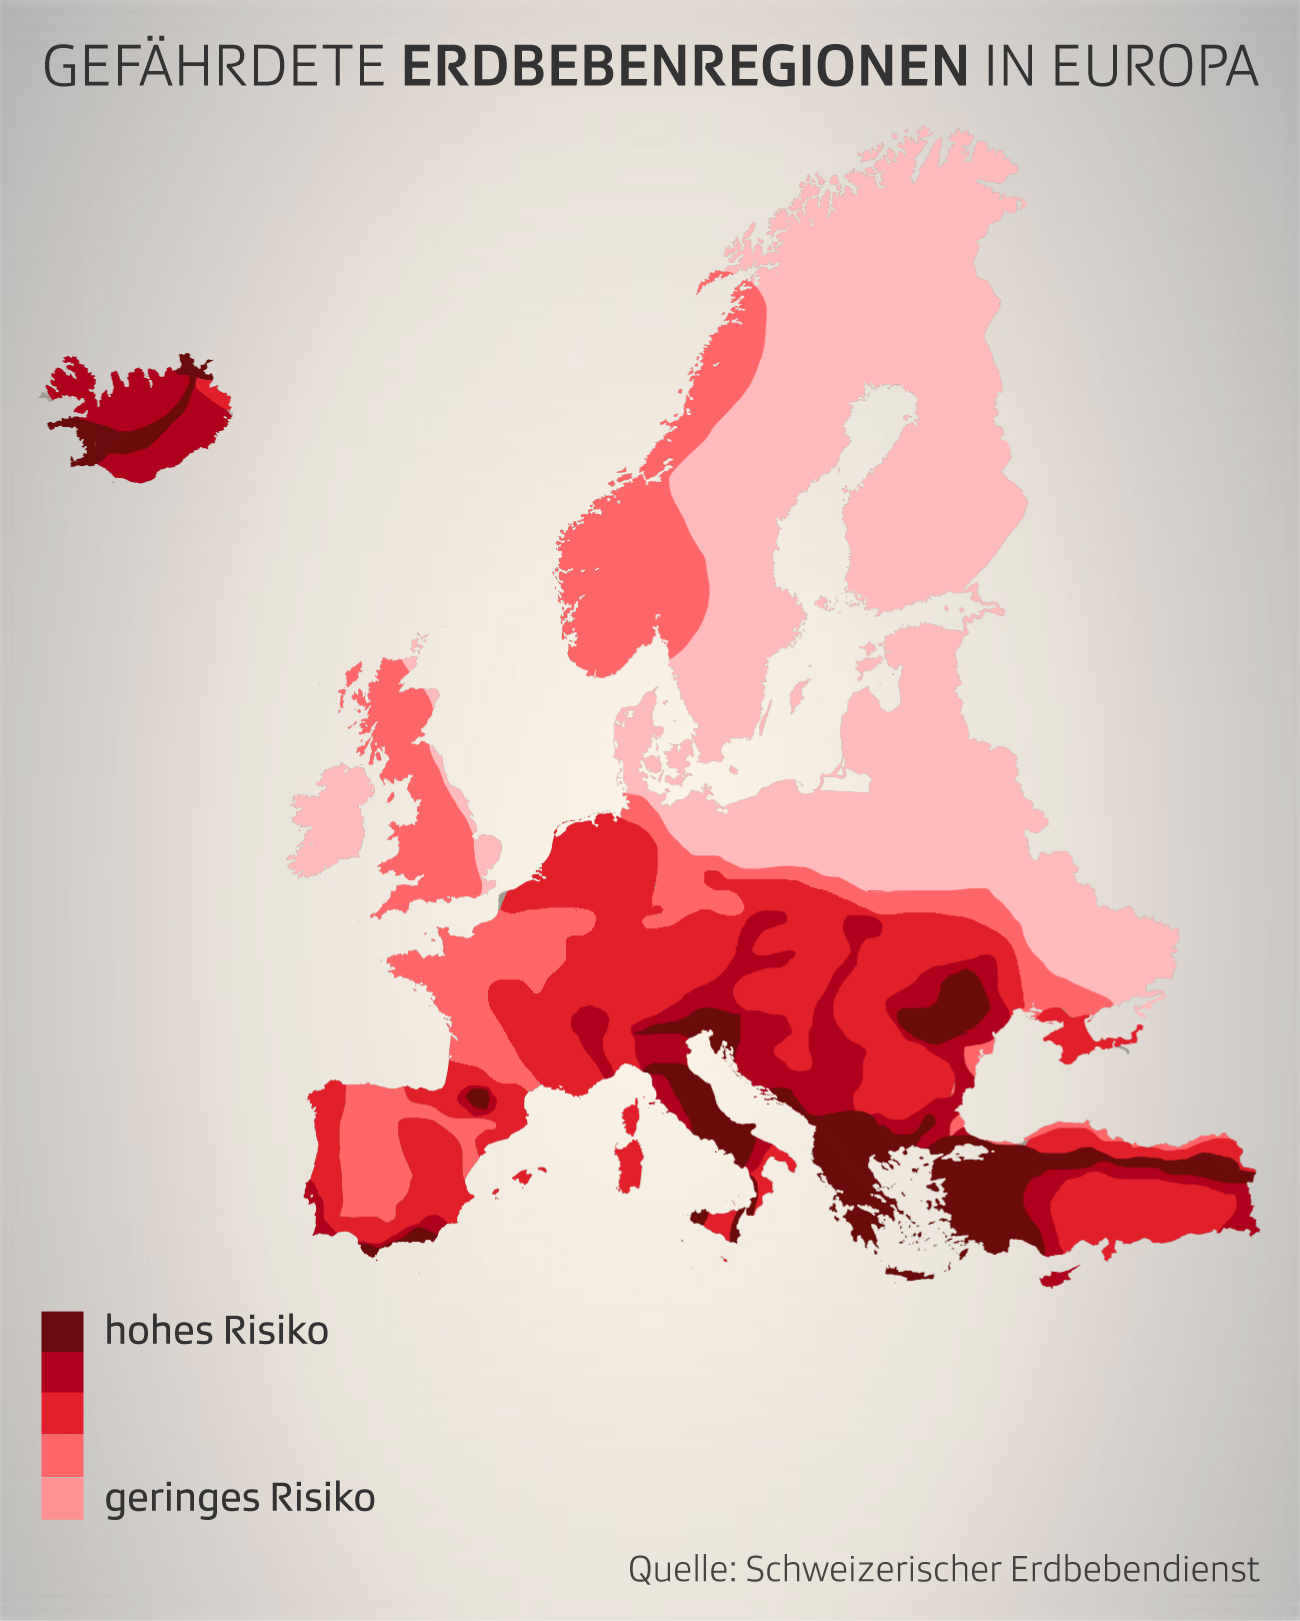 Karte mit Erdbebenregionen nach Risiko in Europa